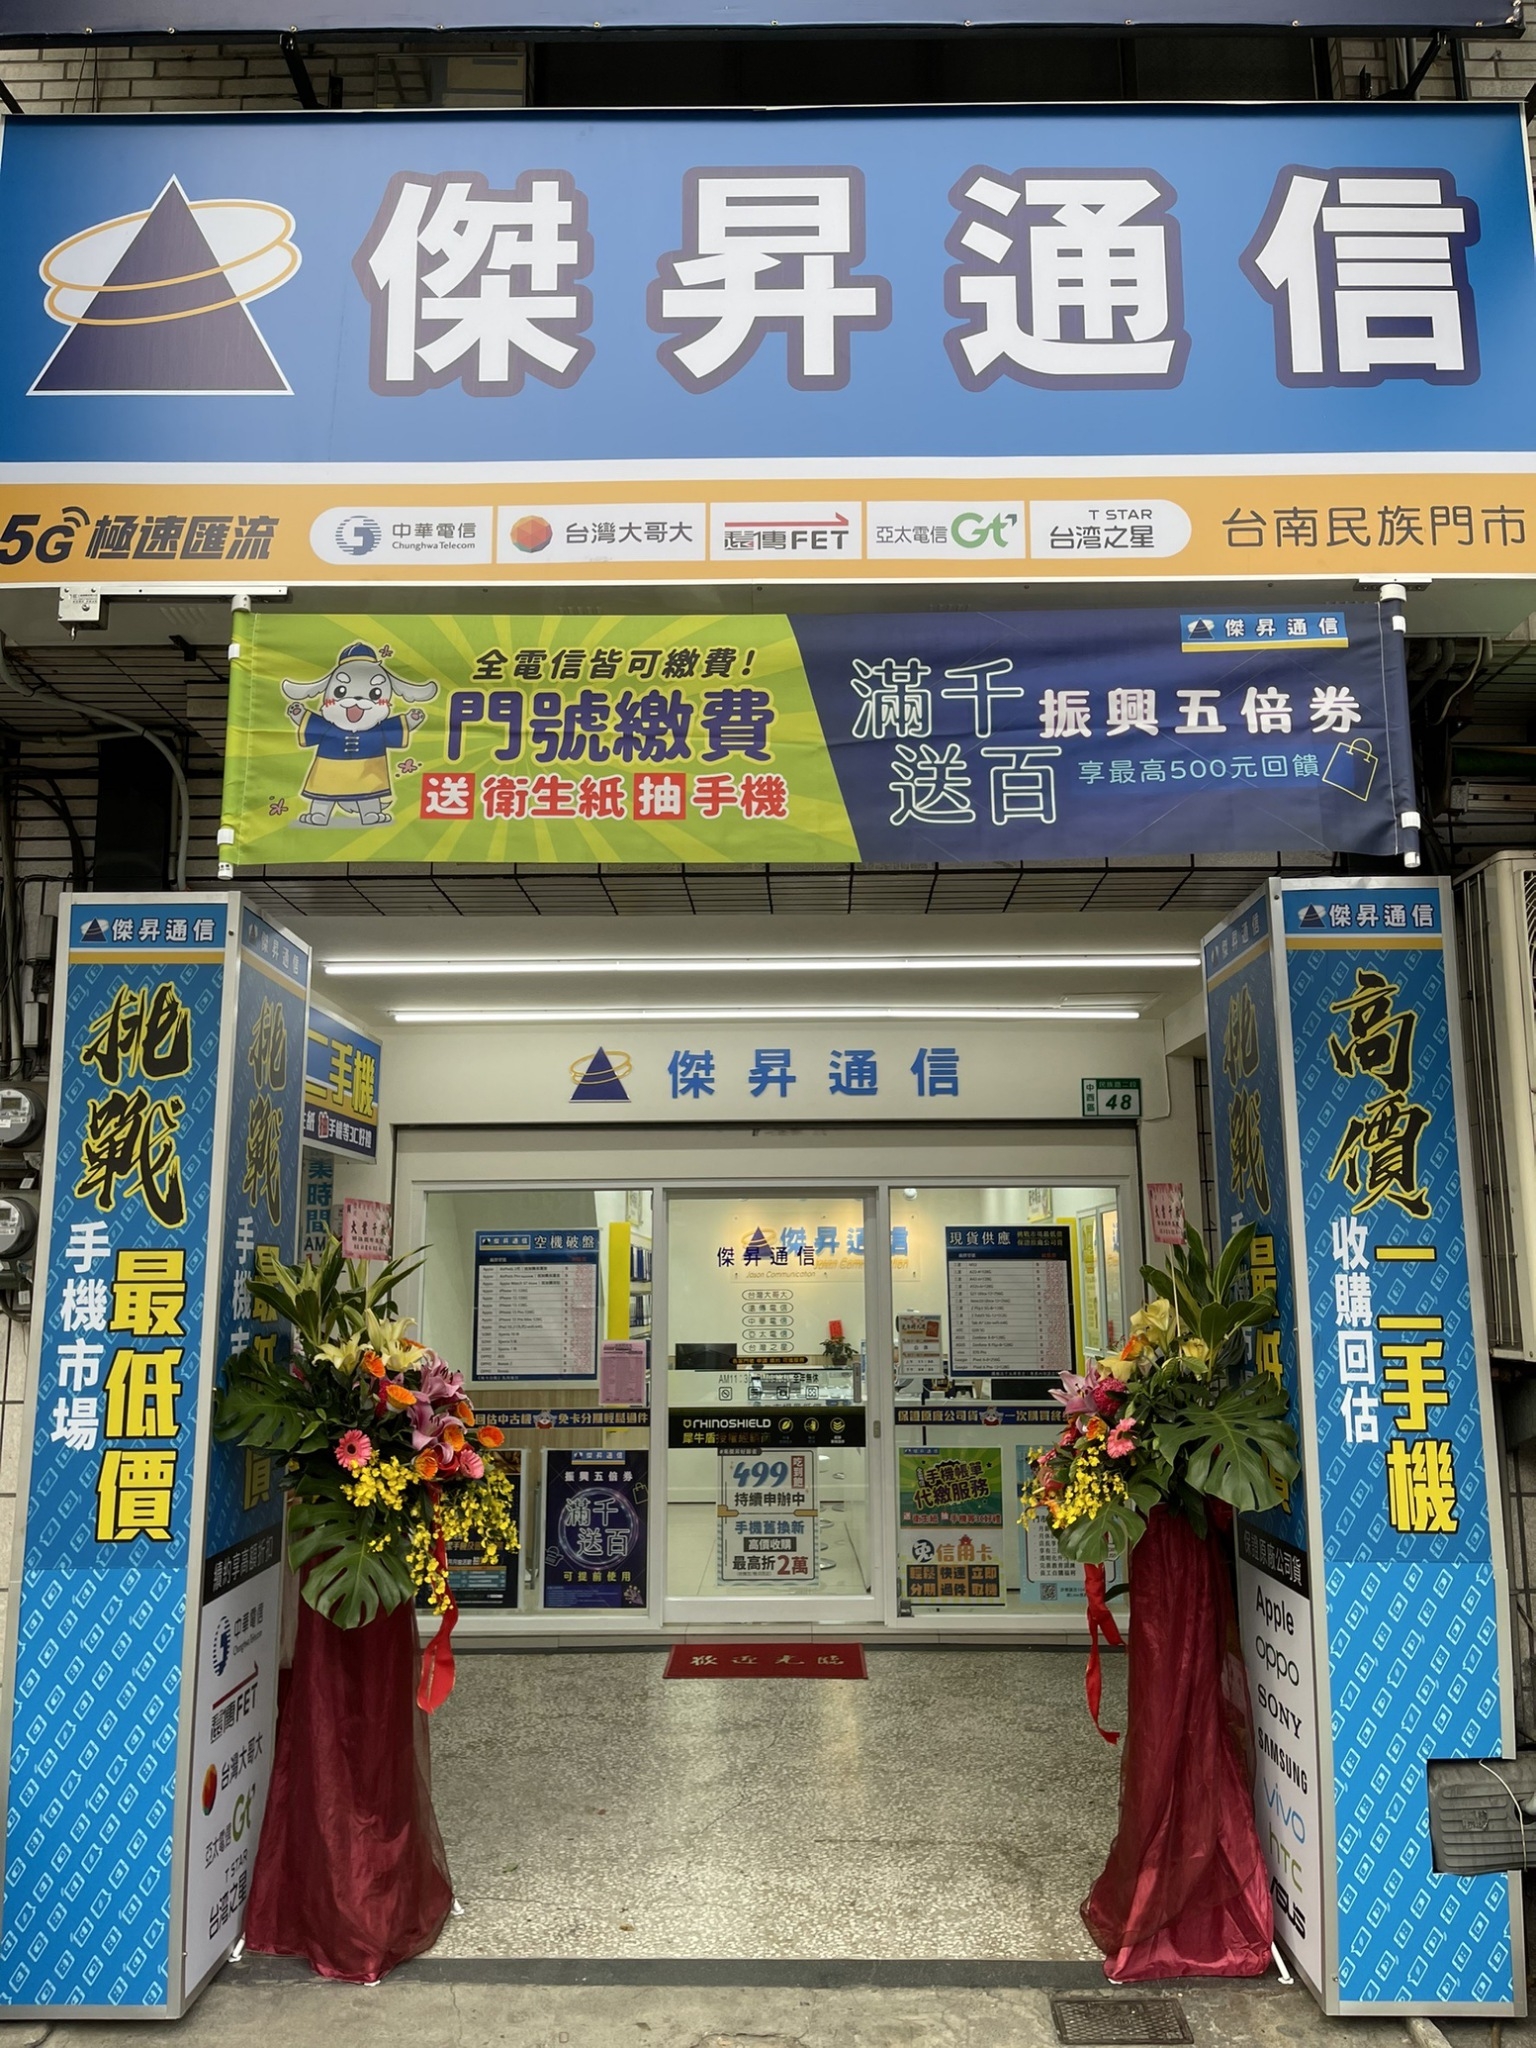 【通訊行推薦】台南中西區門市再+1！民族店正式登場替台南鄉民服務